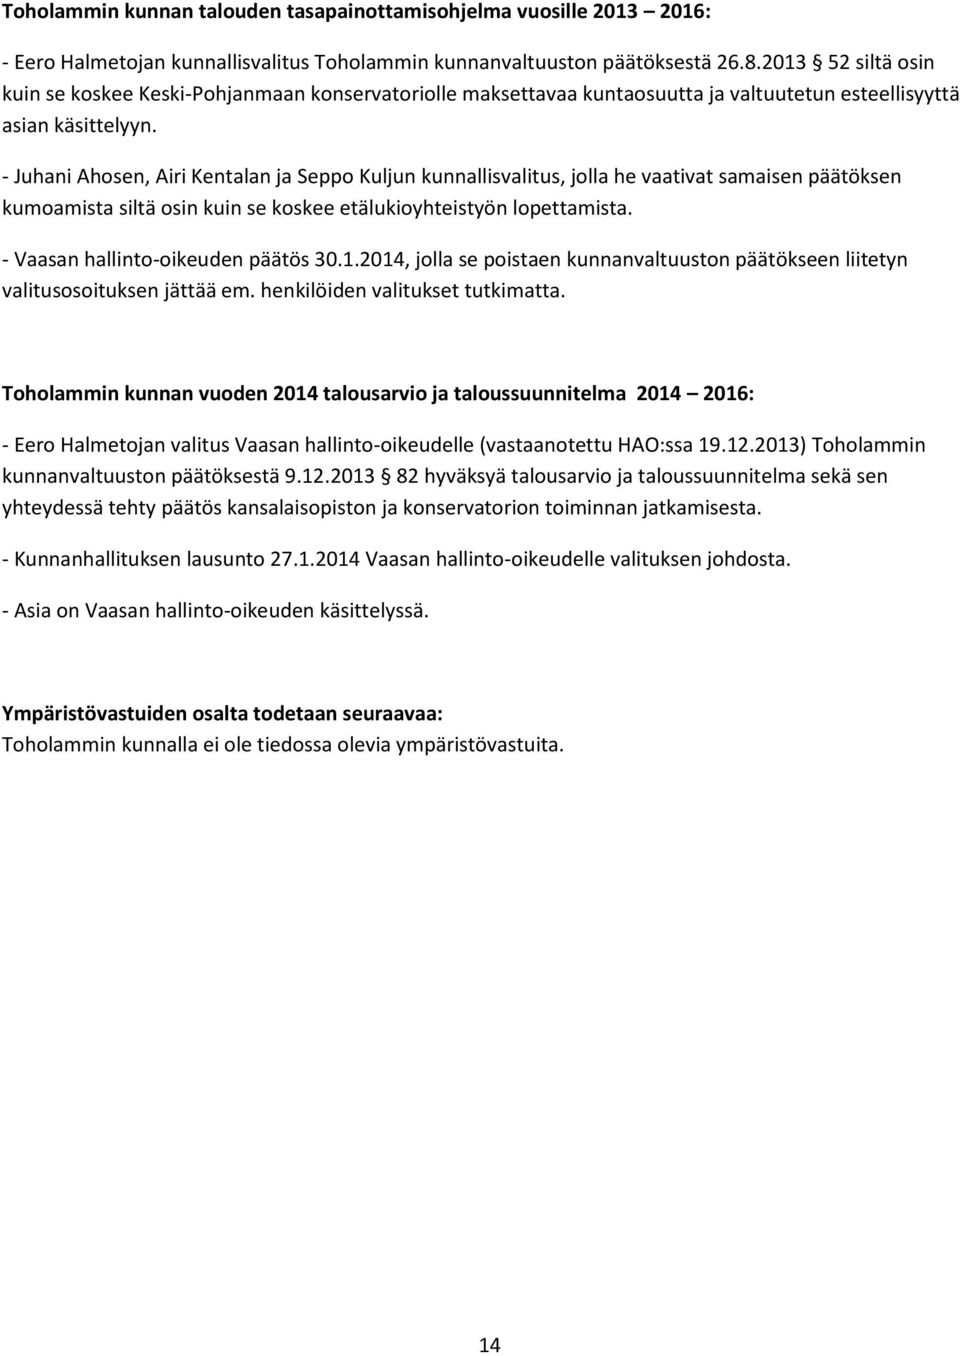 - Juhani Ahosen, Airi Kentalan ja Seppo Kuljun kunnallisvalitus, jolla he vaativat samaisen päätöksen kumoamista siltä osin kuin se koskee etälukioyhteistyön lopettamista.